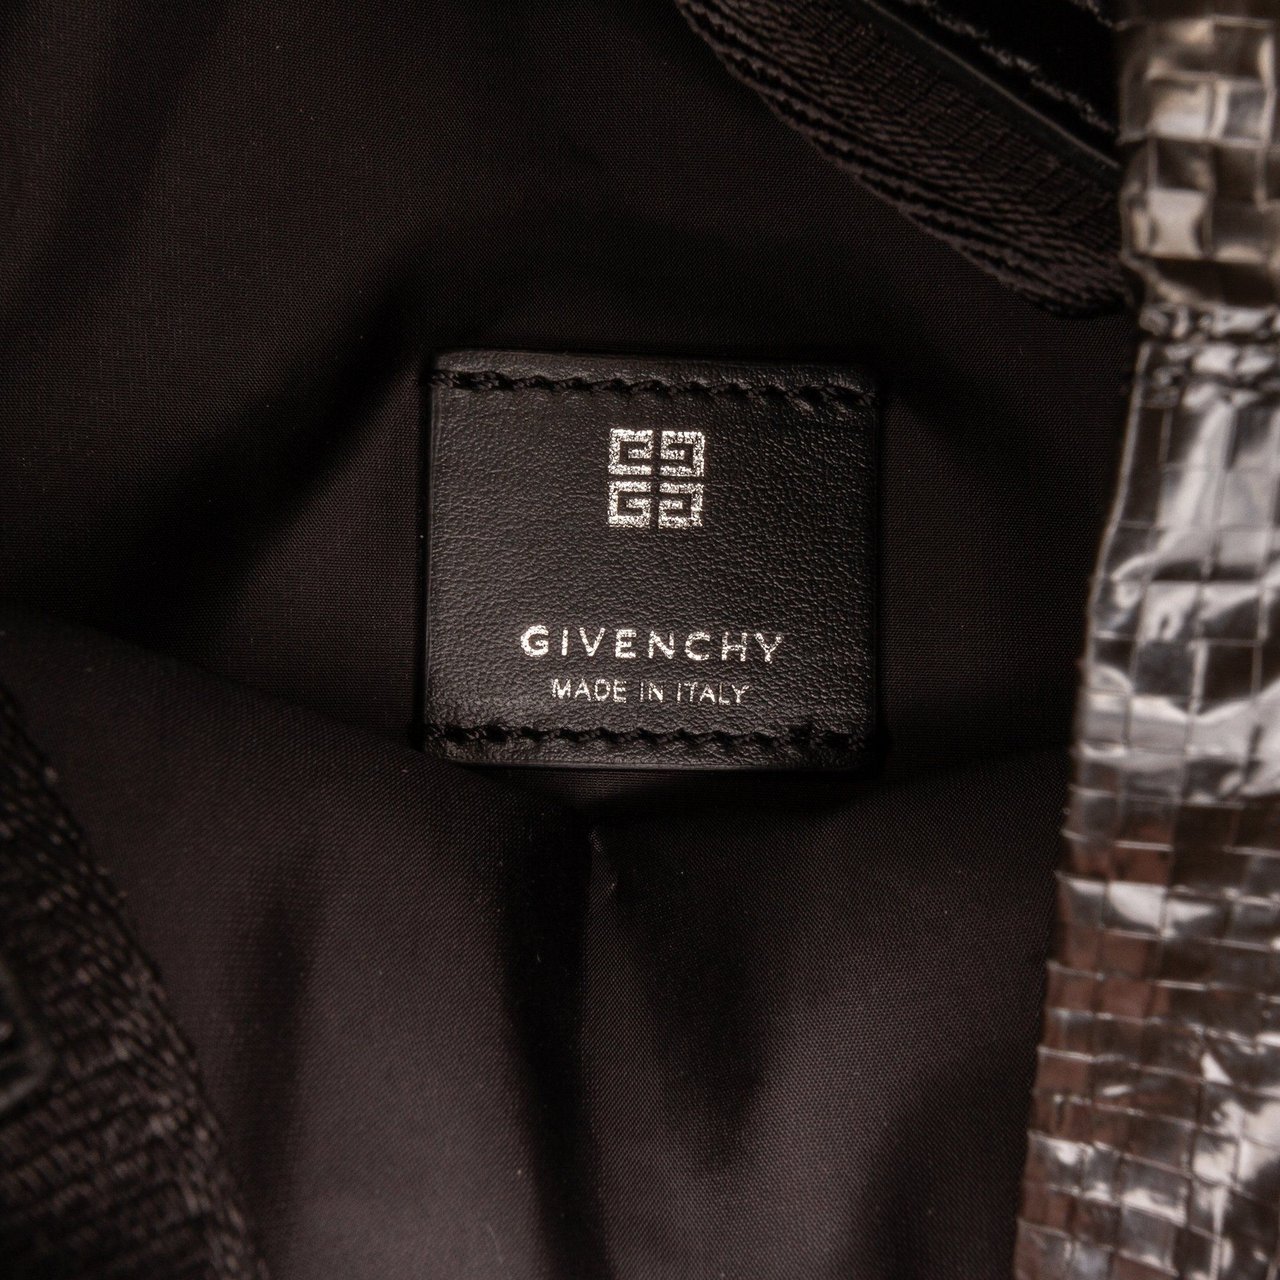 Givenchy Mini G Shopper Tote Zwart